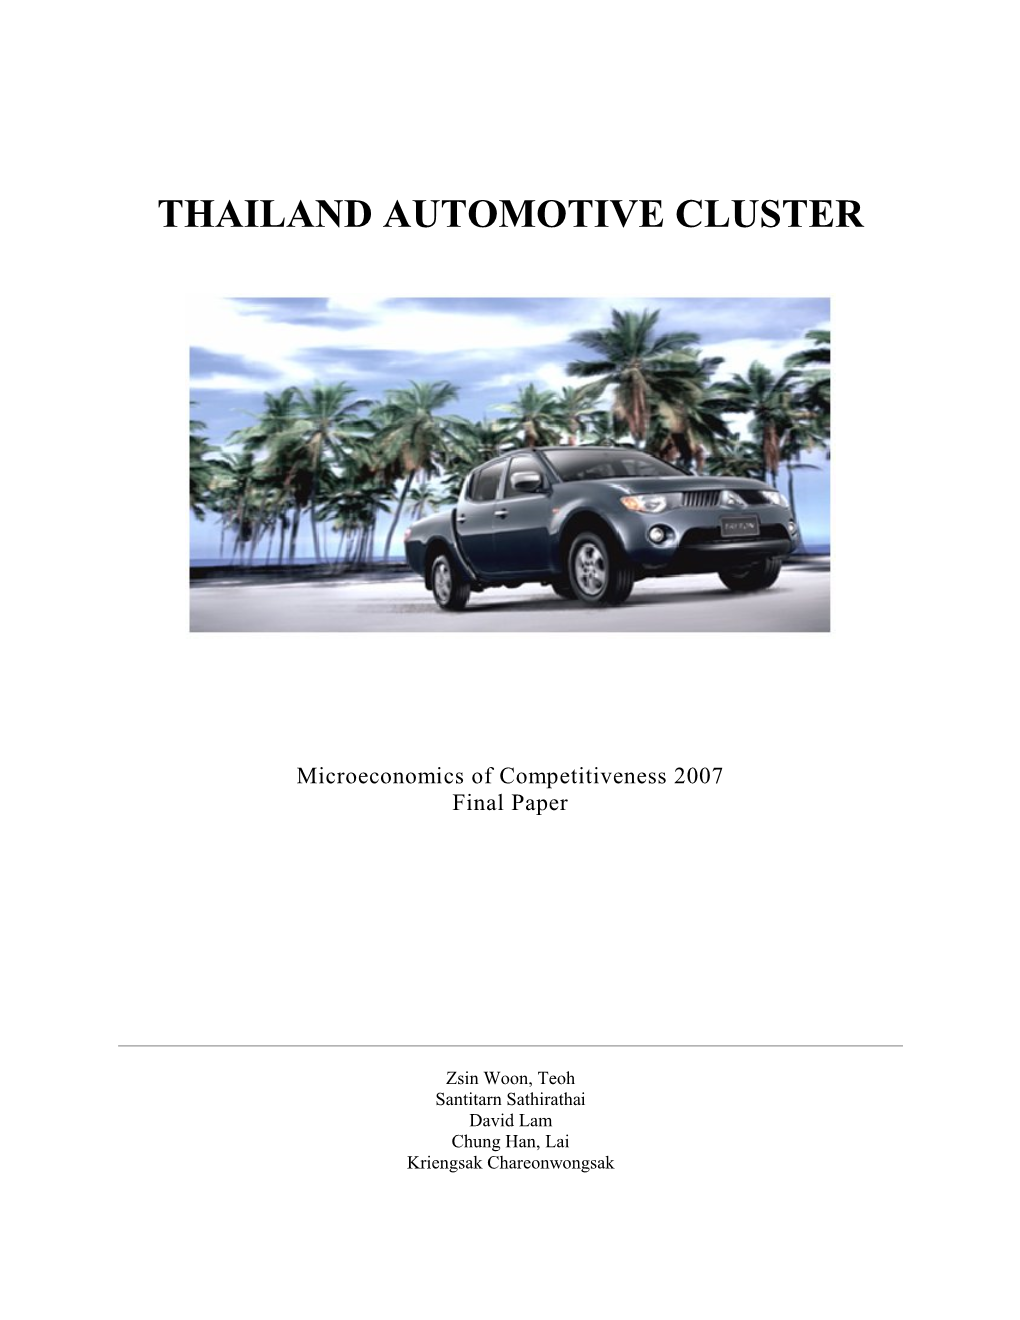 Thailand Automotive Cluster